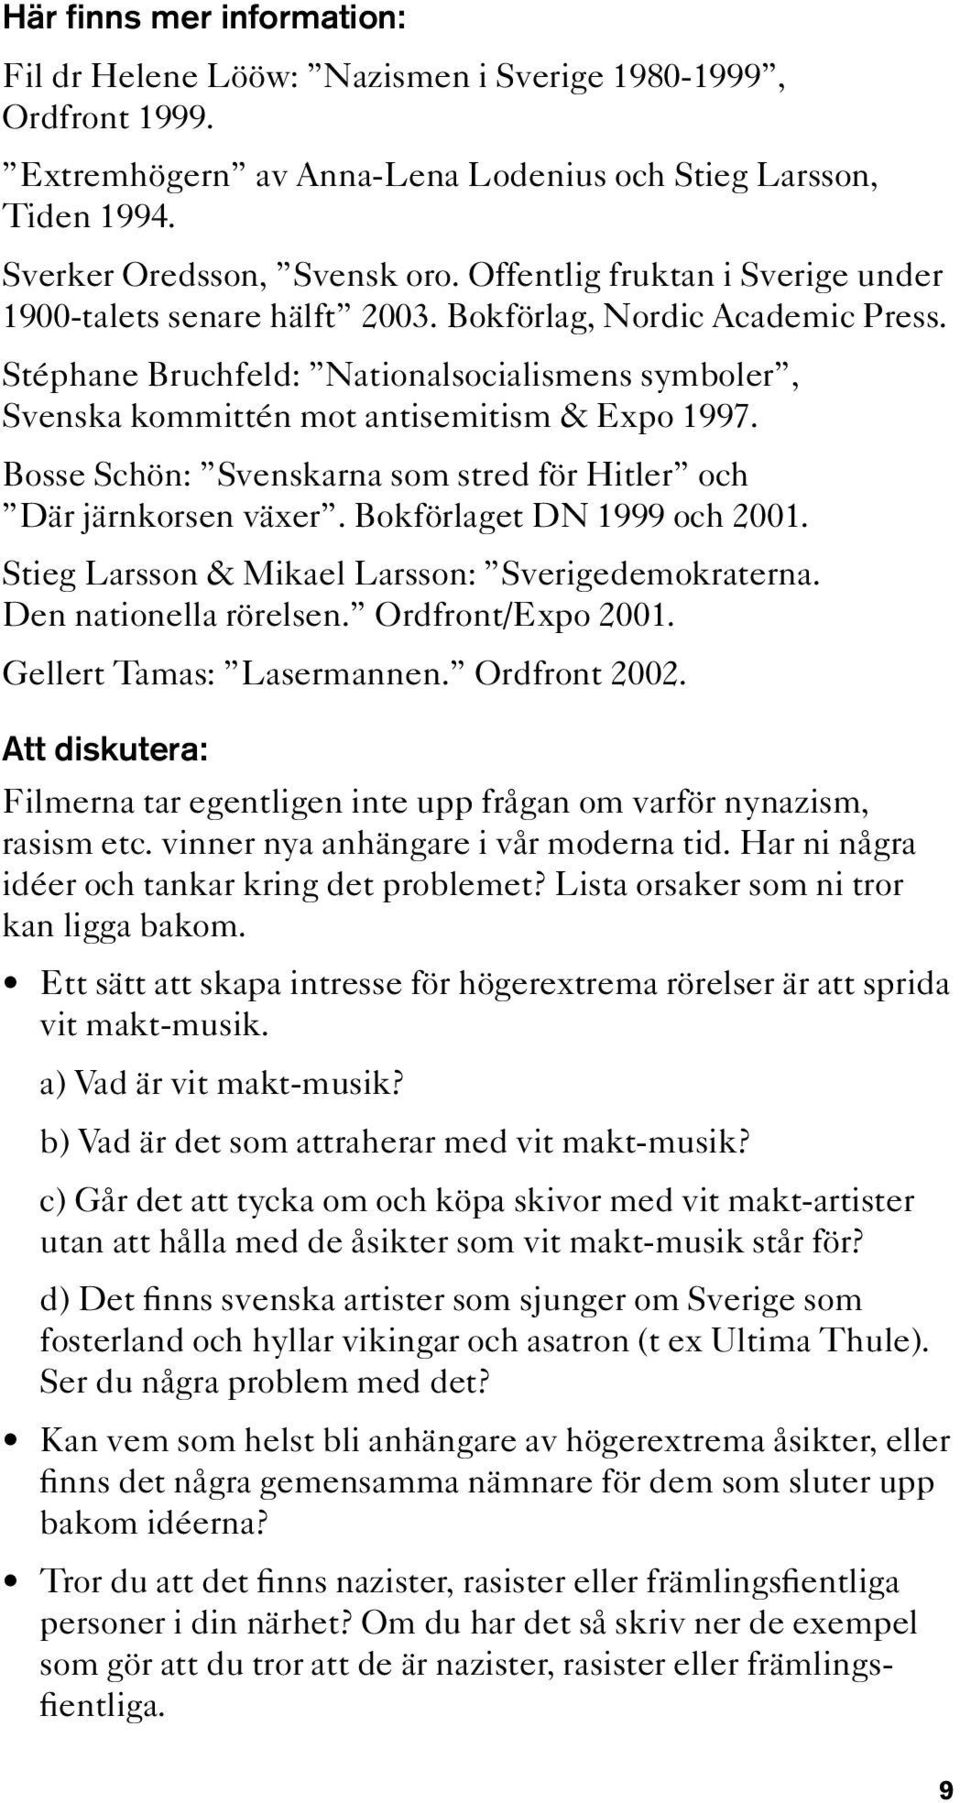 Bosse Schön: Svenskarna som stred för Hitler och Där järnkorsen växer. Bokförlaget DN 1999 och 2001. Stieg Larsson & Mikael Larsson: Sverigedemokraterna. Den nationella rörelsen. Ordfront/Expo 2001.